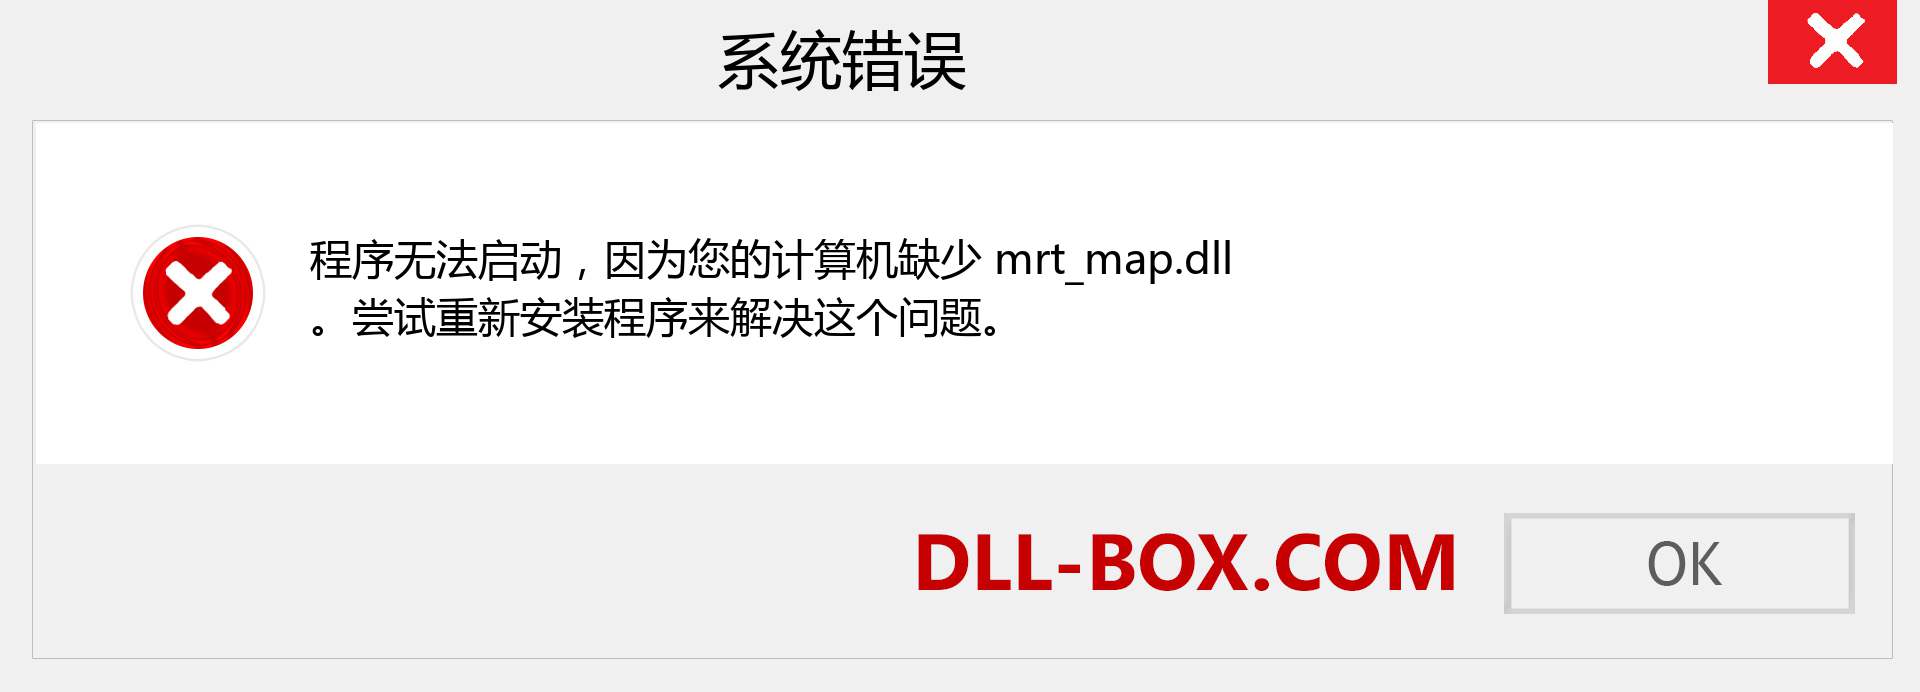 mrt_map.dll 文件丢失？。 适用于 Windows 7、8、10 的下载 - 修复 Windows、照片、图像上的 mrt_map dll 丢失错误